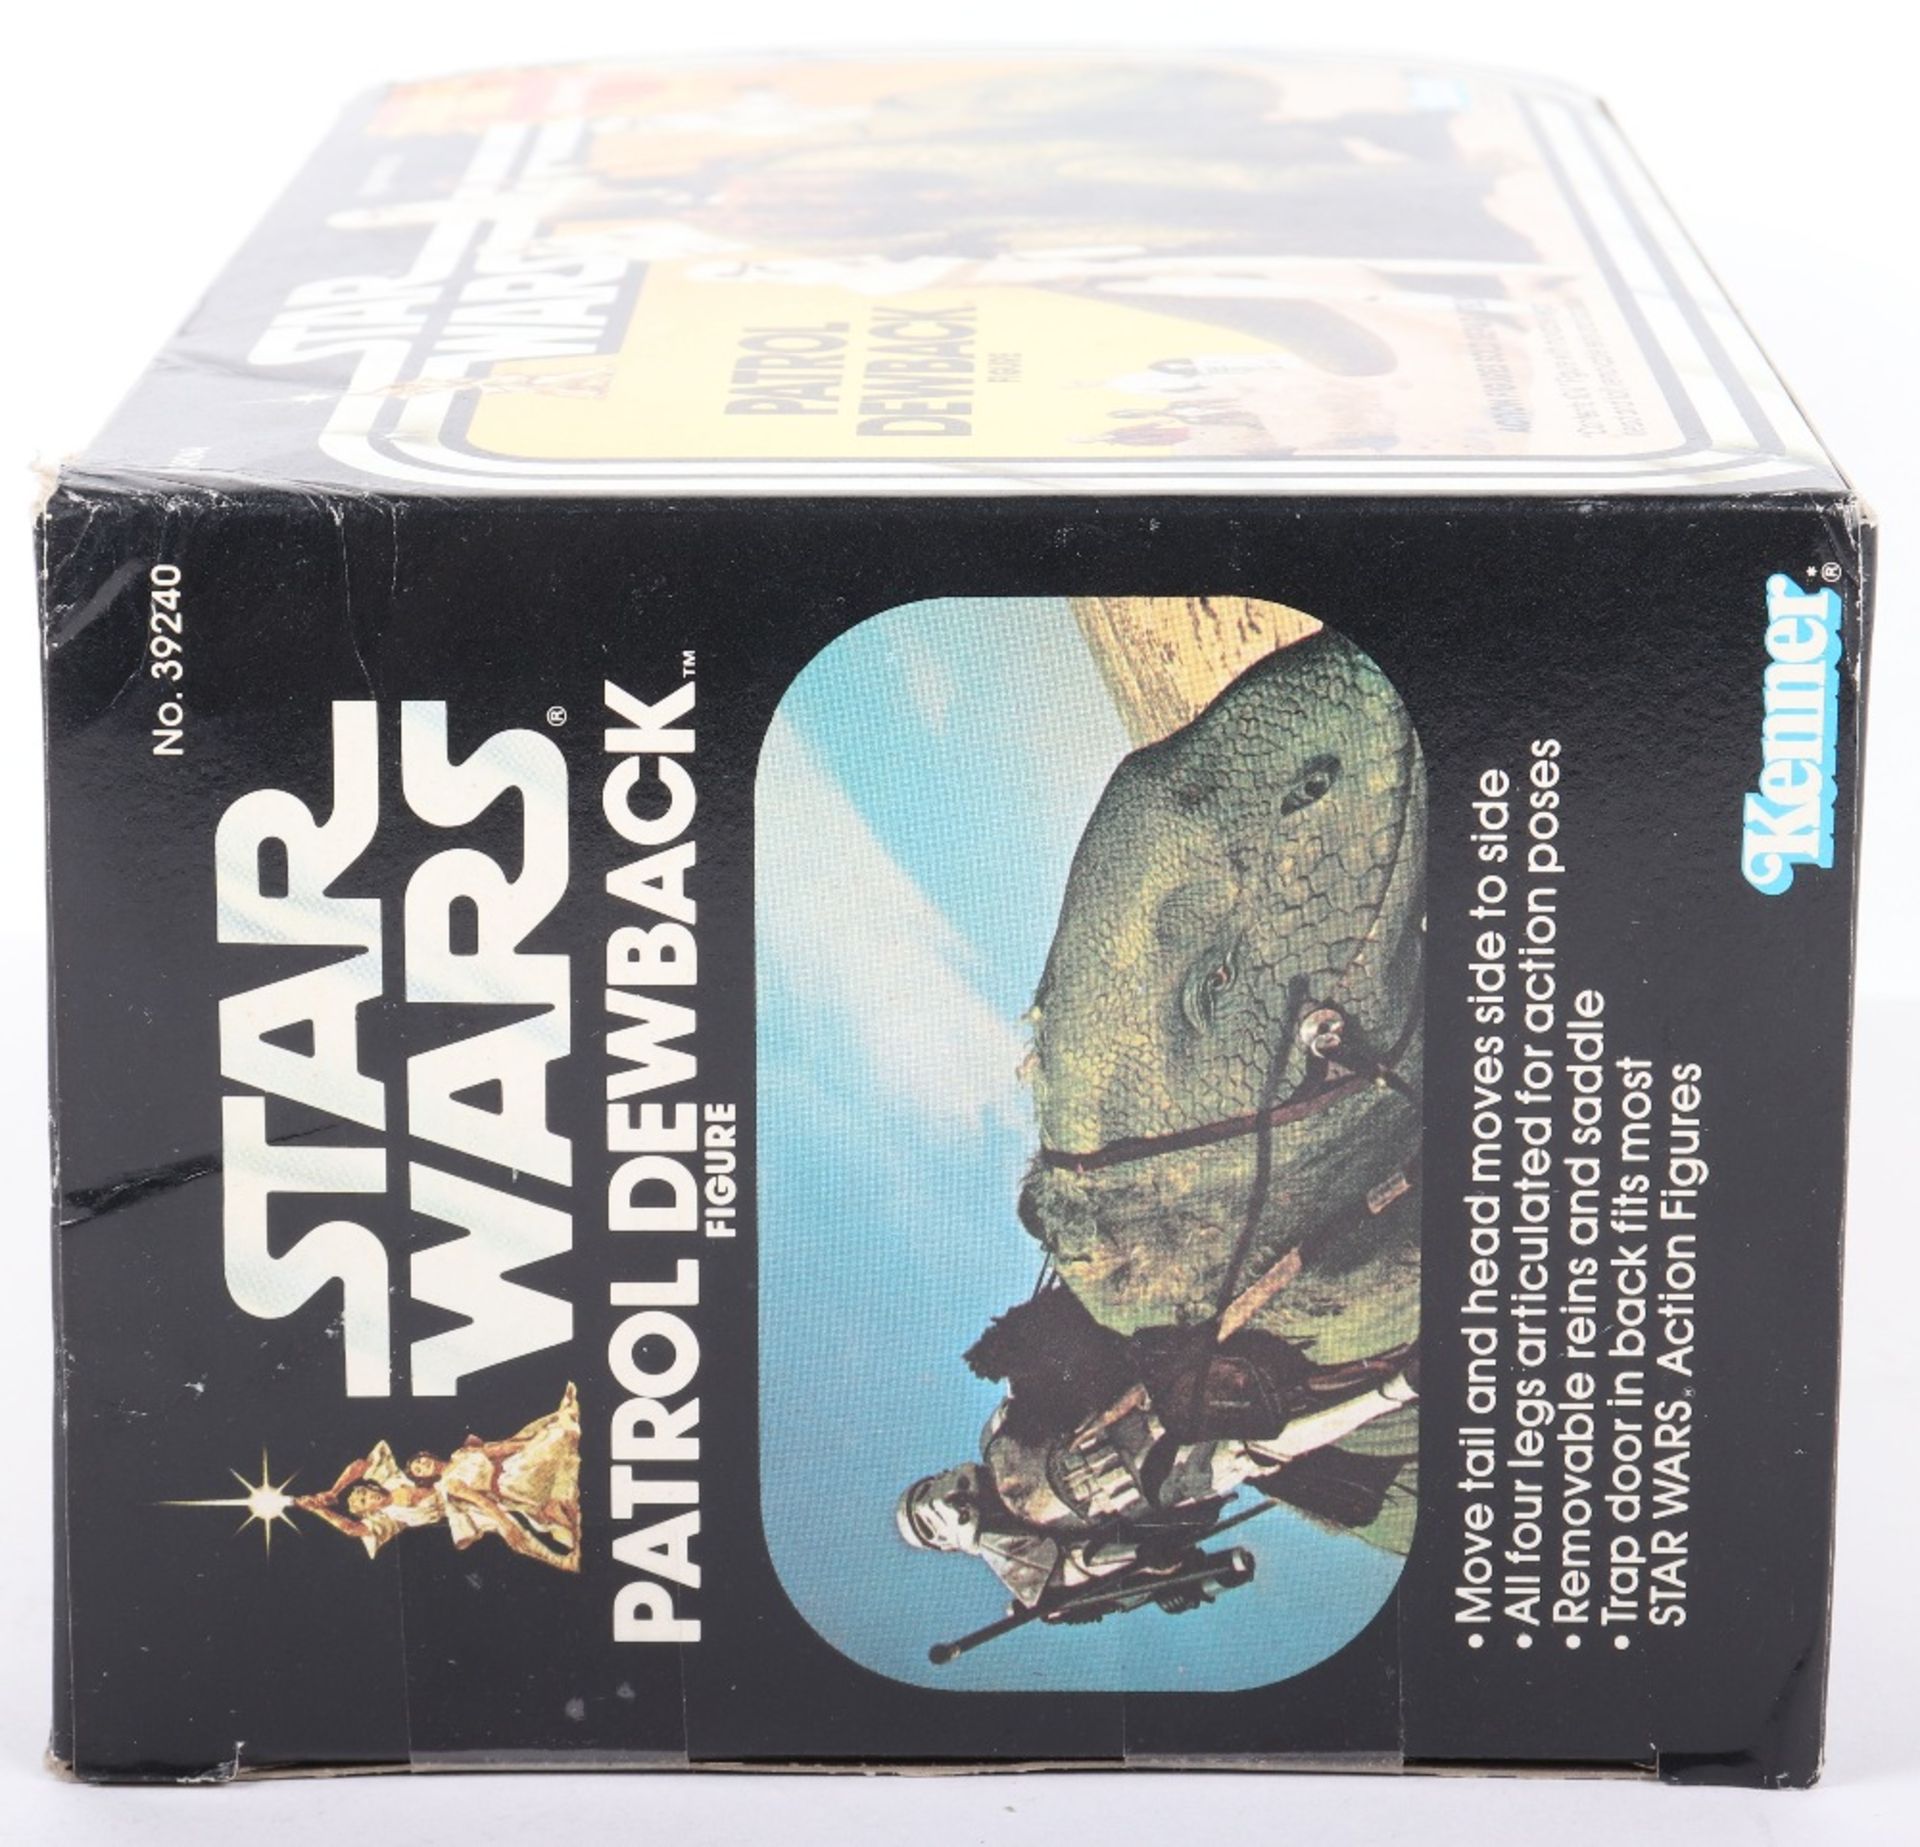 Boxed Kenner Star Wars Patrol Dewback Figure - Image 6 of 11